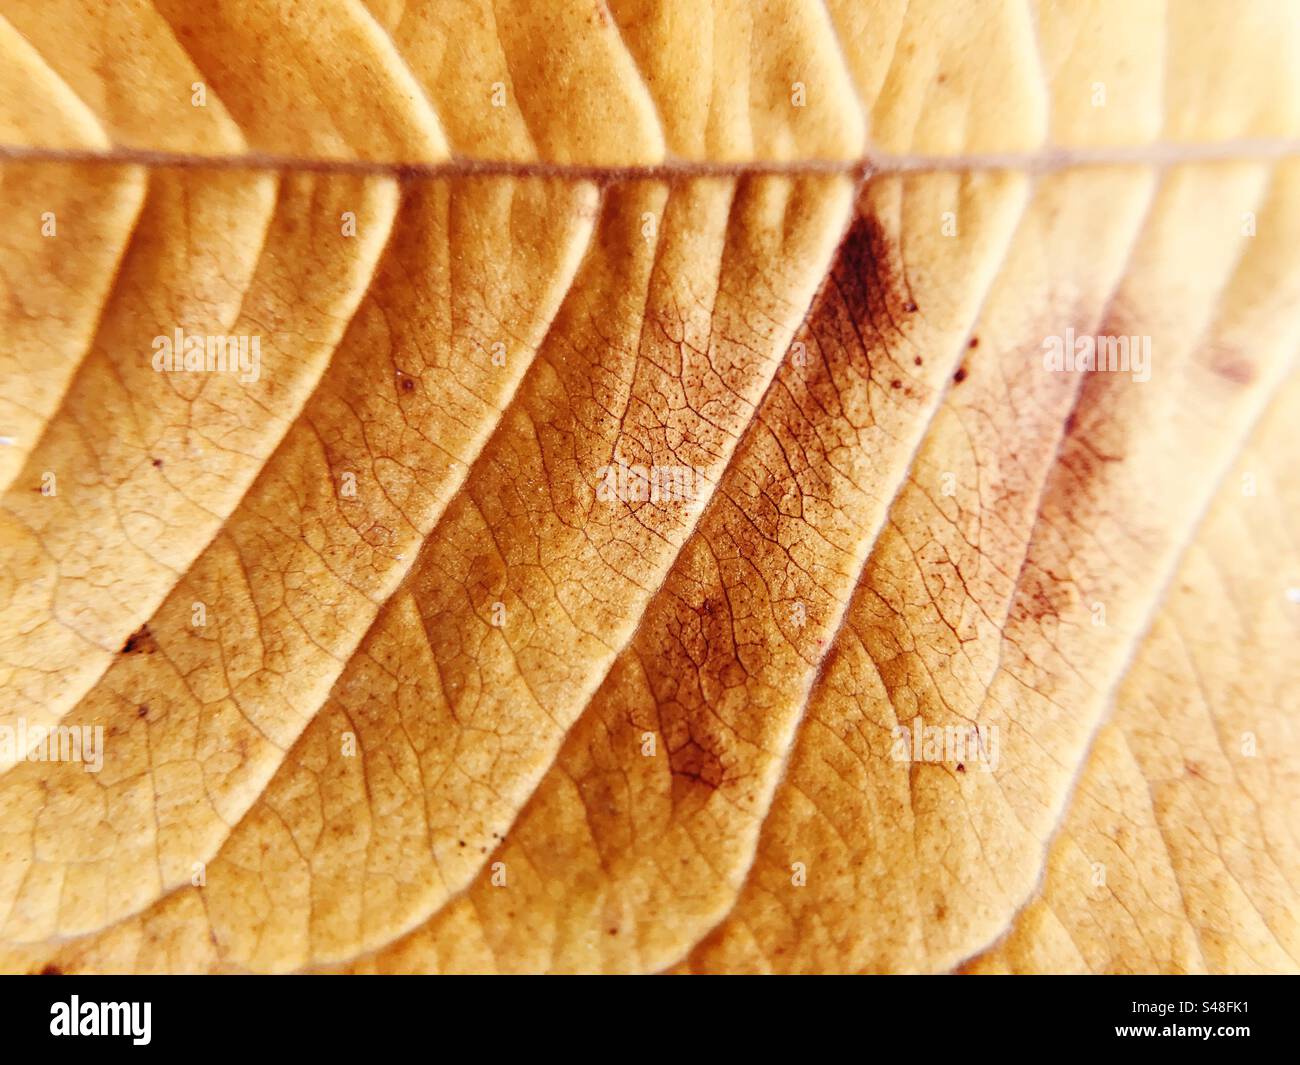 Primer plano de una hoja rojiza que muestra su forma y textura Foto de stock